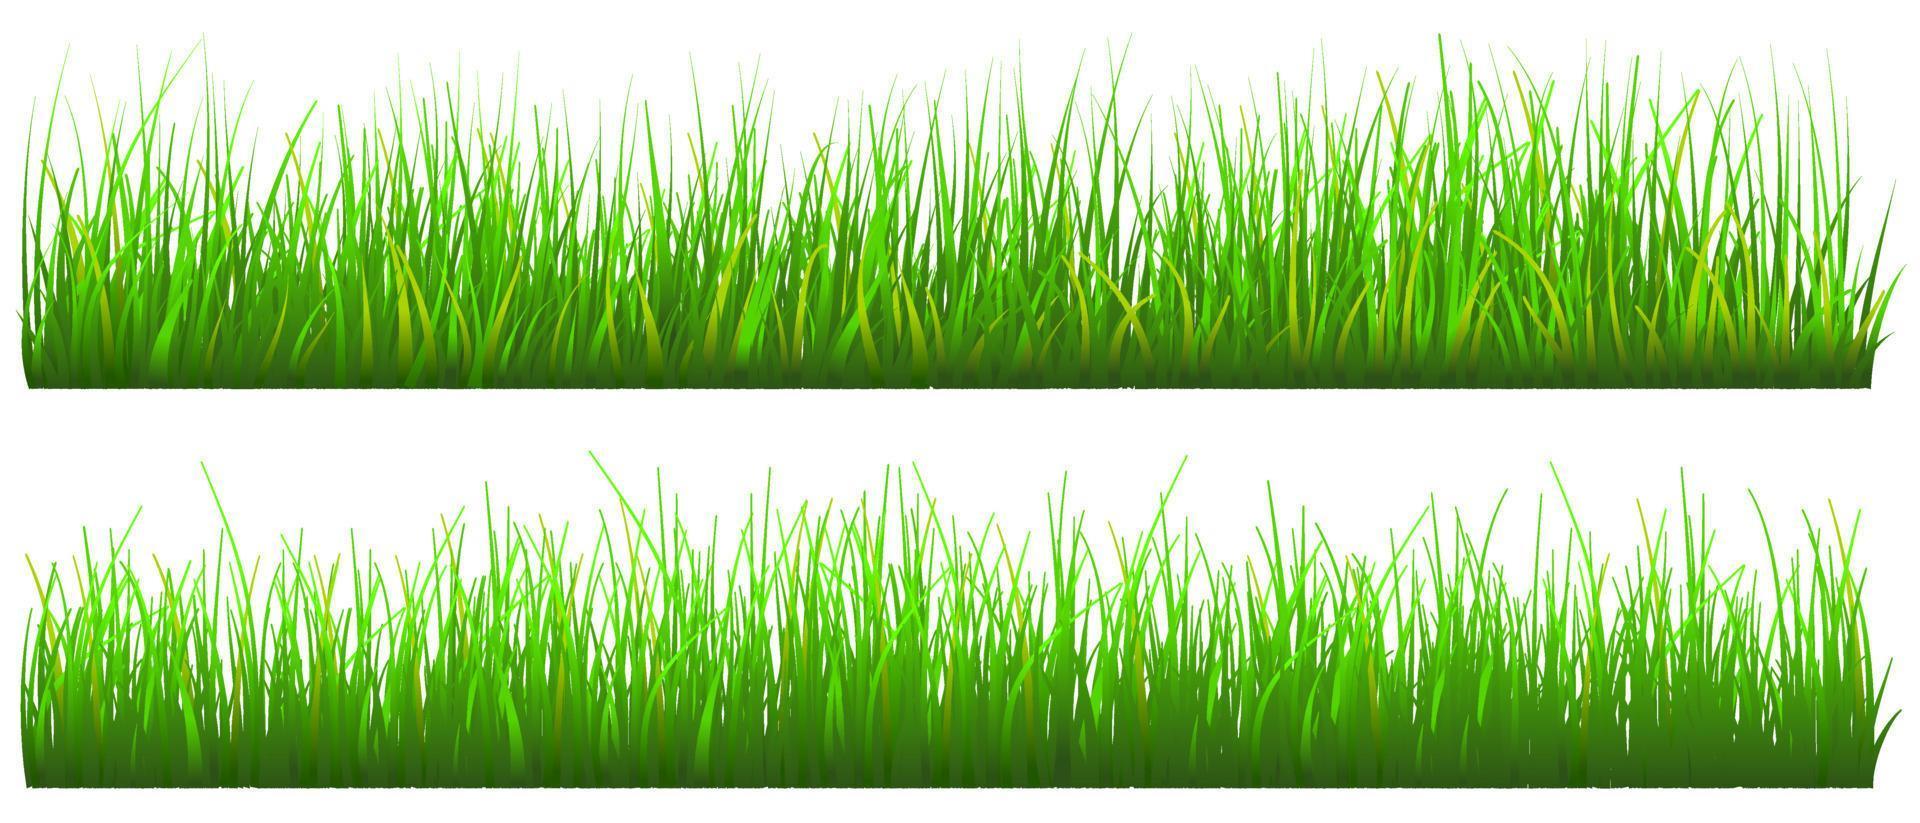 grönt gräs bakgrund, realistiskt gräs set isolerade, gratis vektor